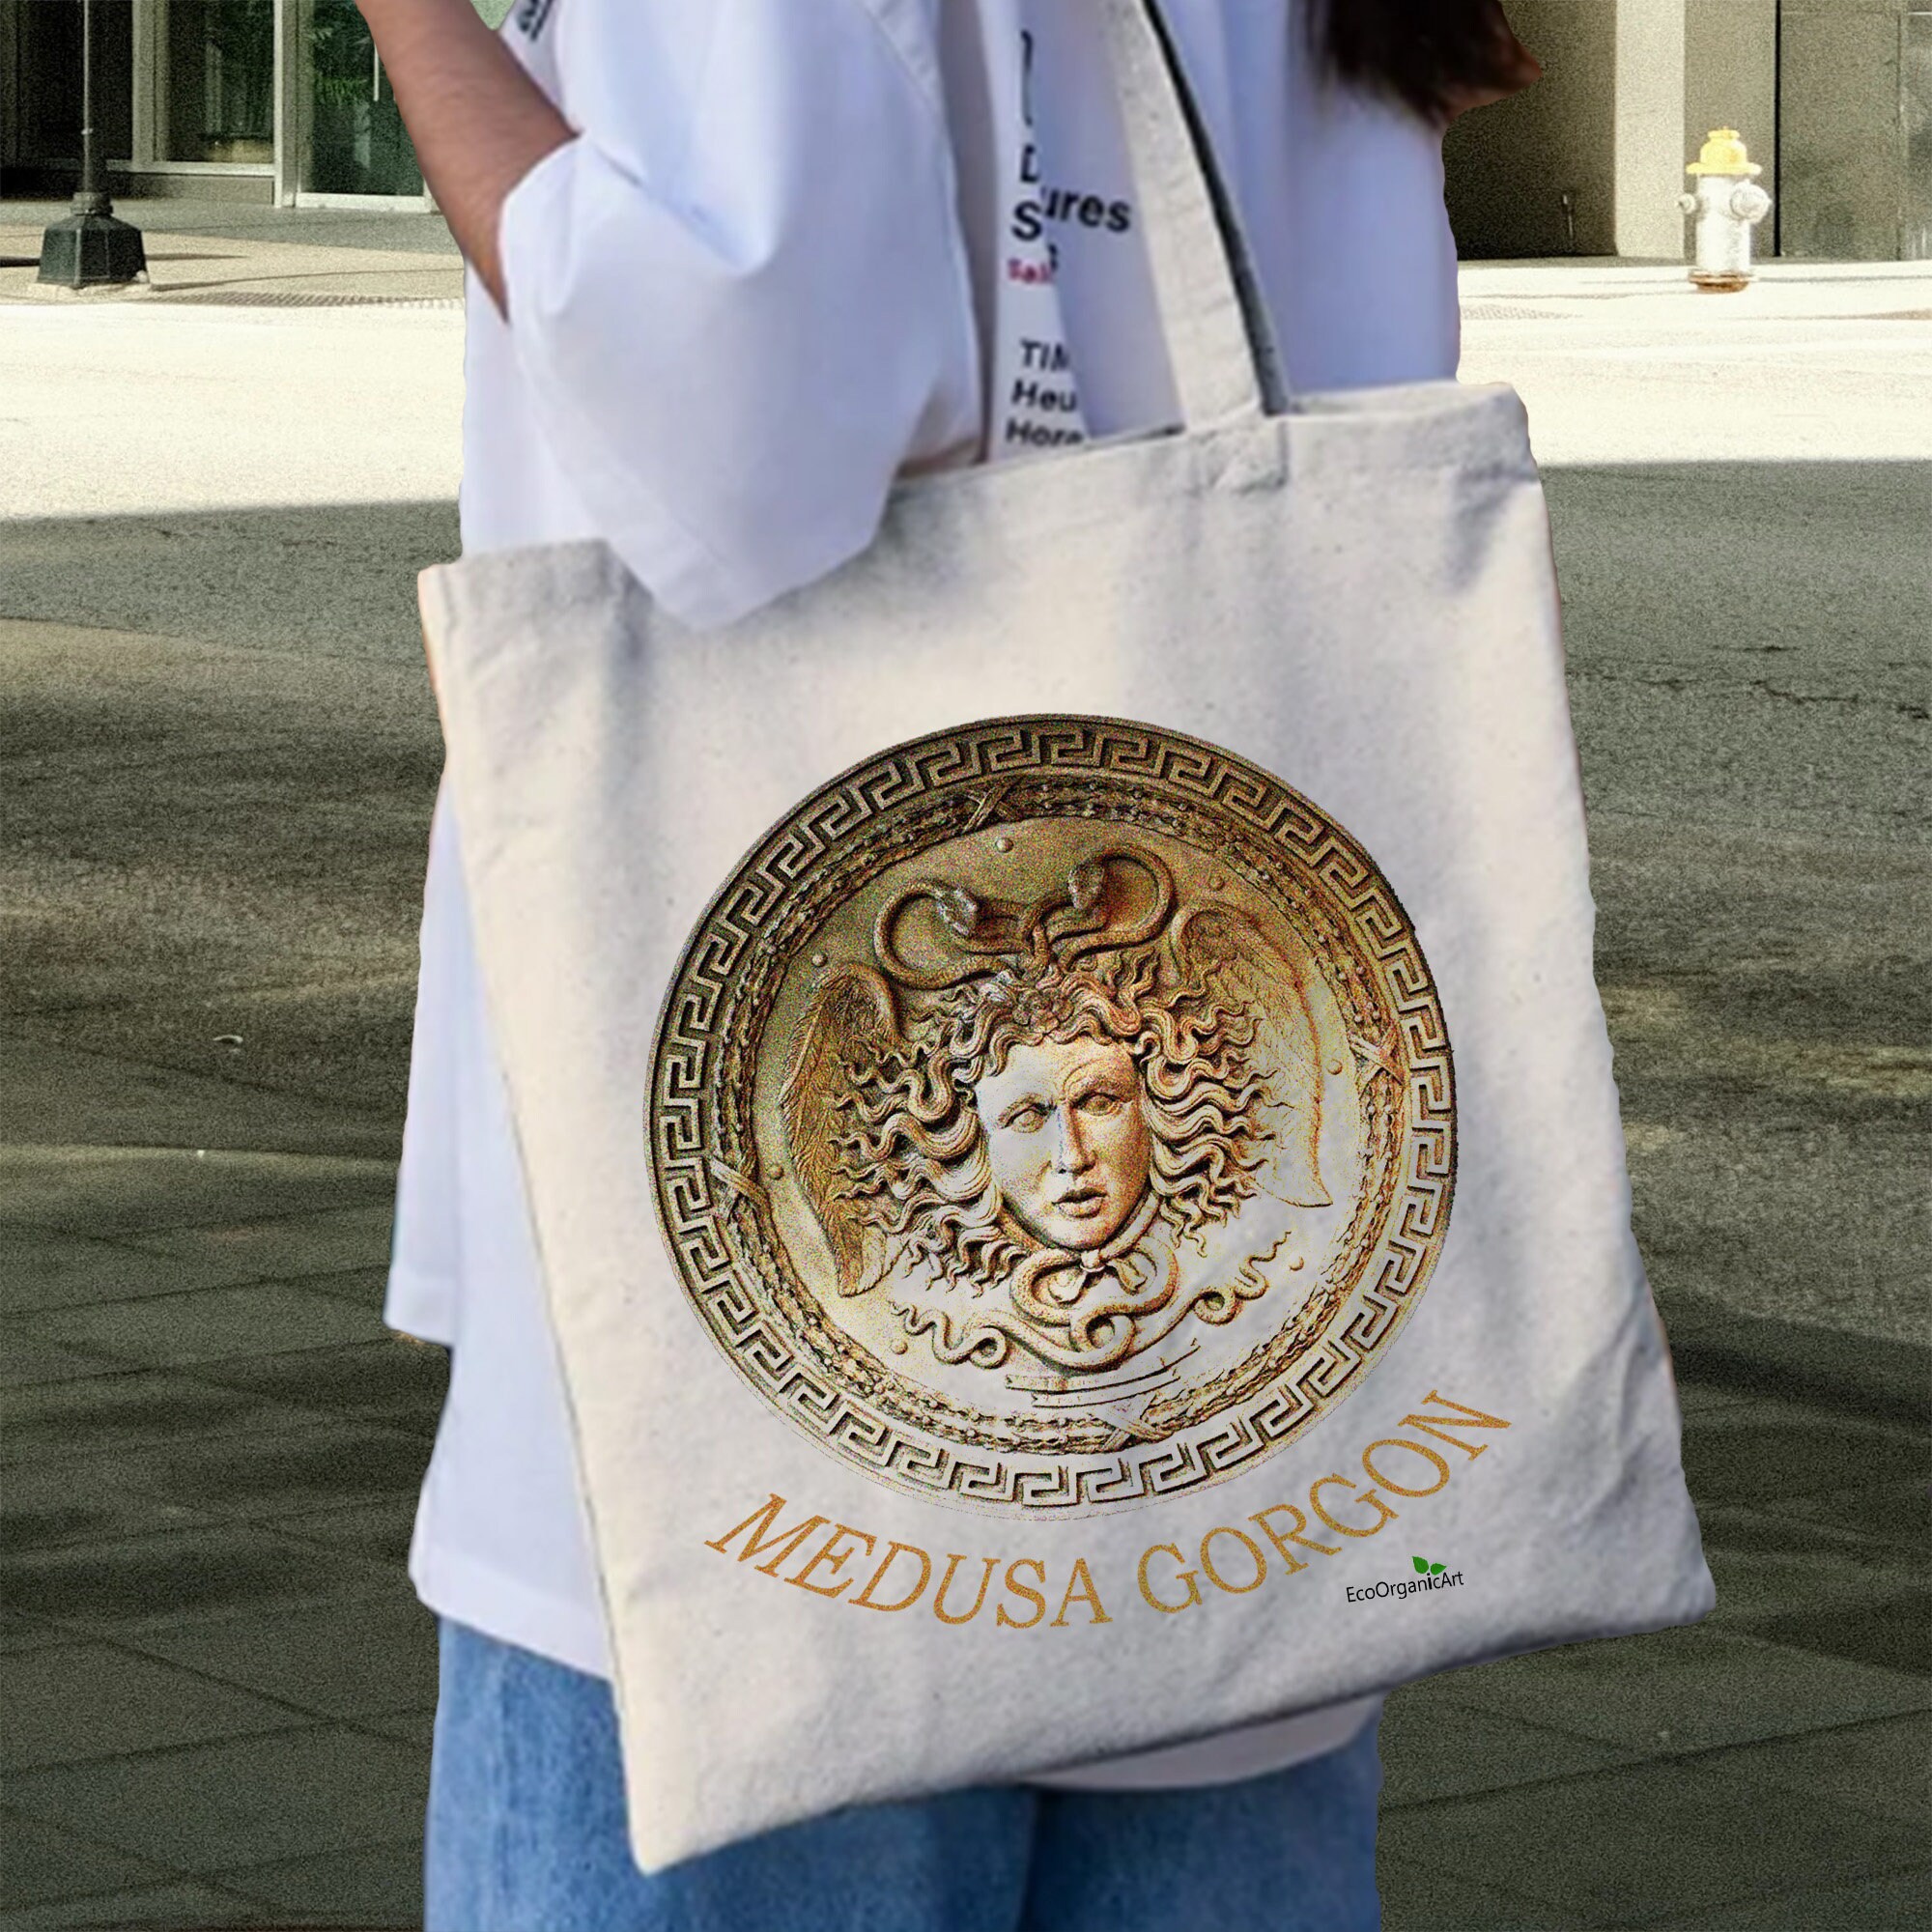 Versace Studded La Medusa Large Tote Bag for Women